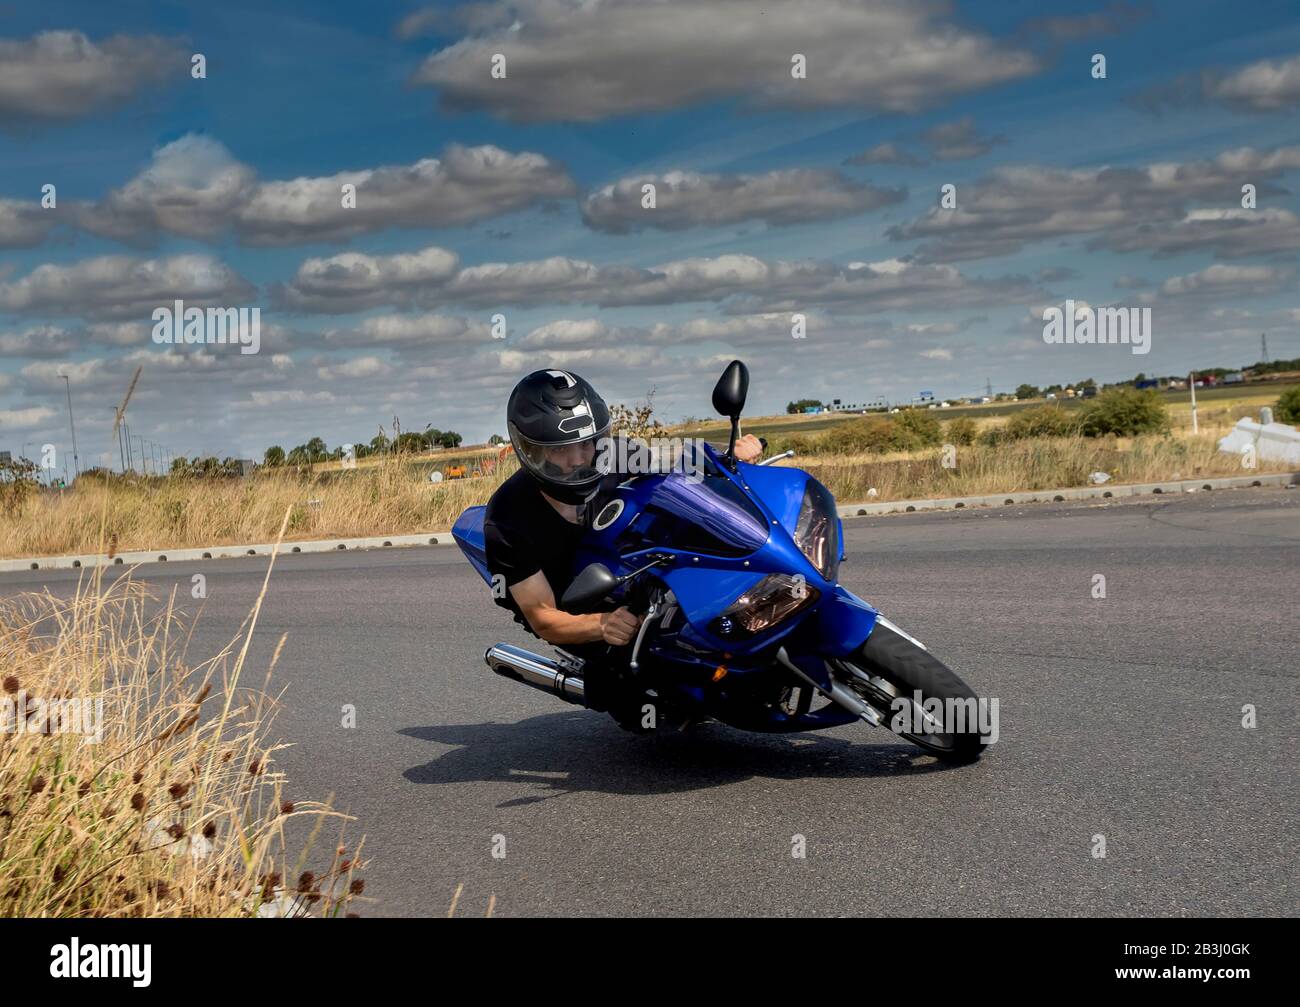 Junge auf dem Motorrad, schnell auf der Ecke, Straßenrennen Stockfotografie  - Alamy